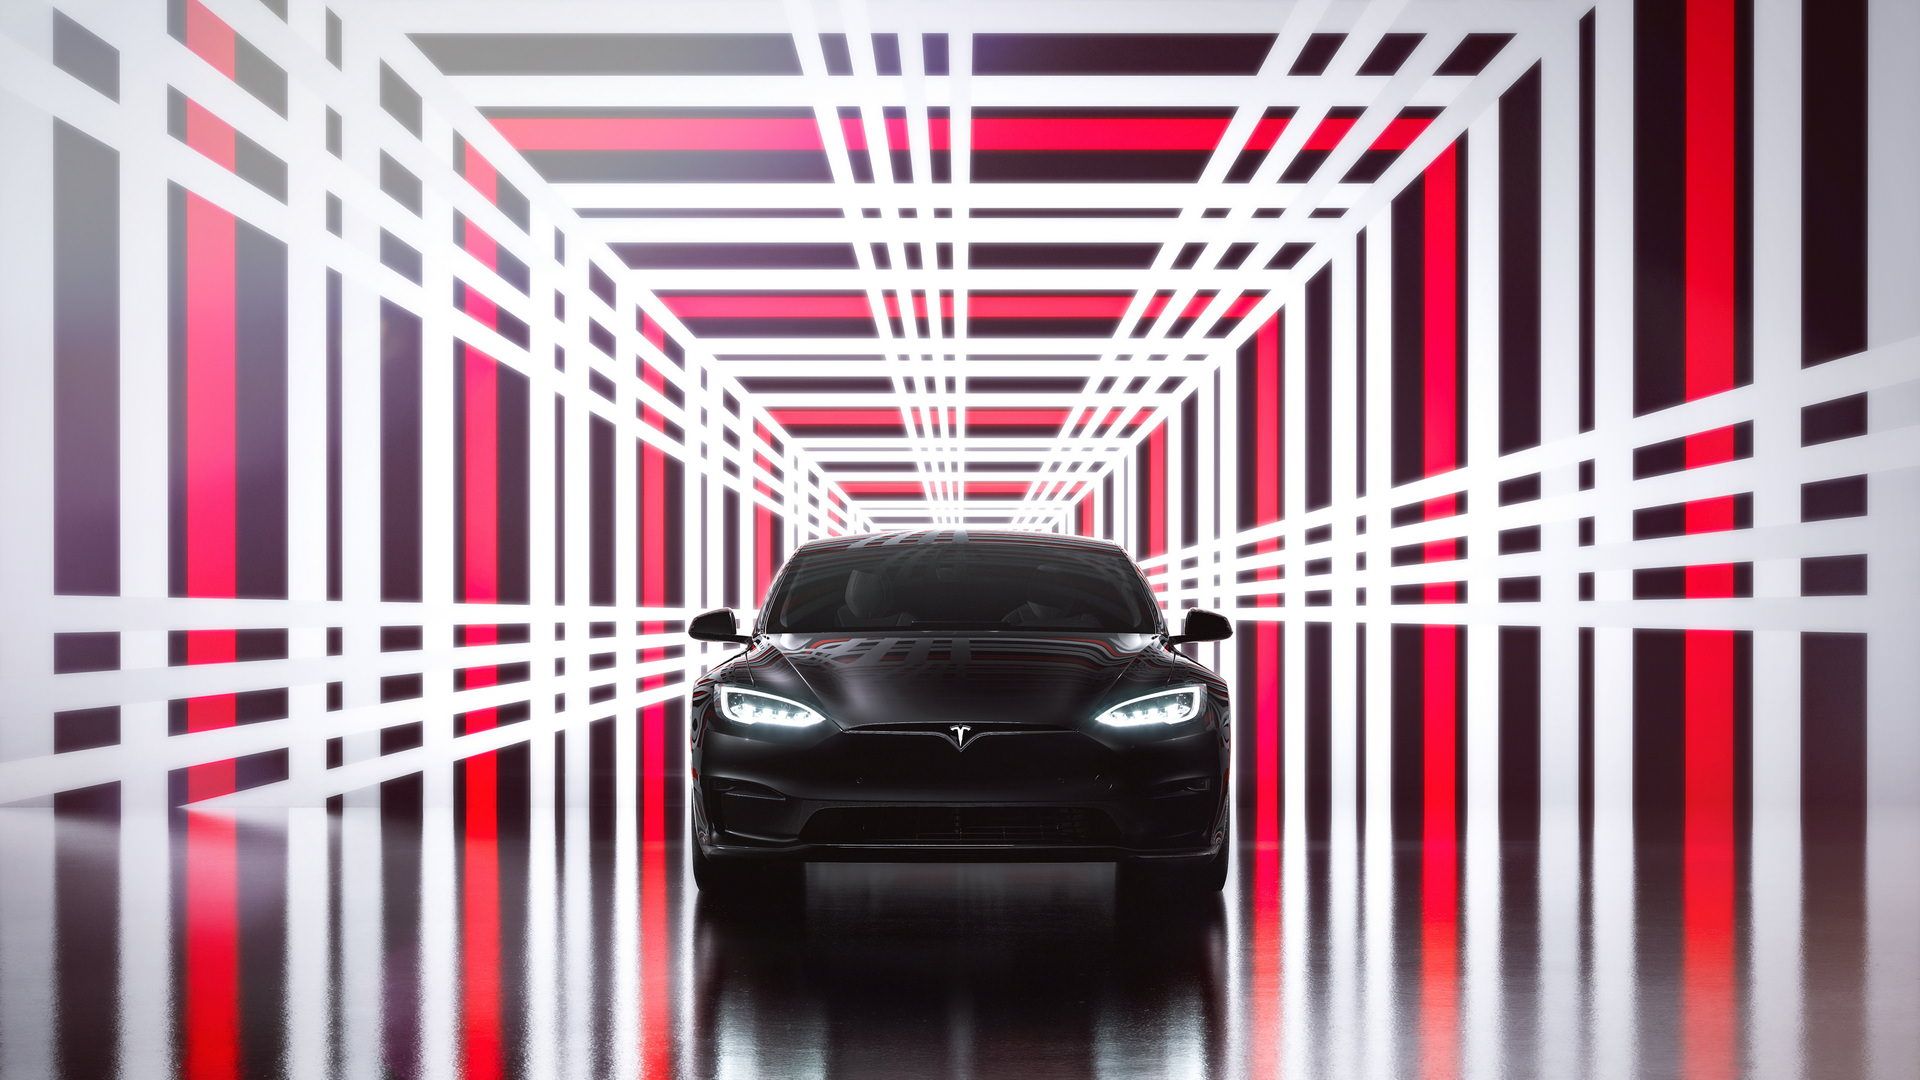 خودروی الکتریکی تسلا مدل اس پلید / Tesla Model S Plaid سیاه رنگ